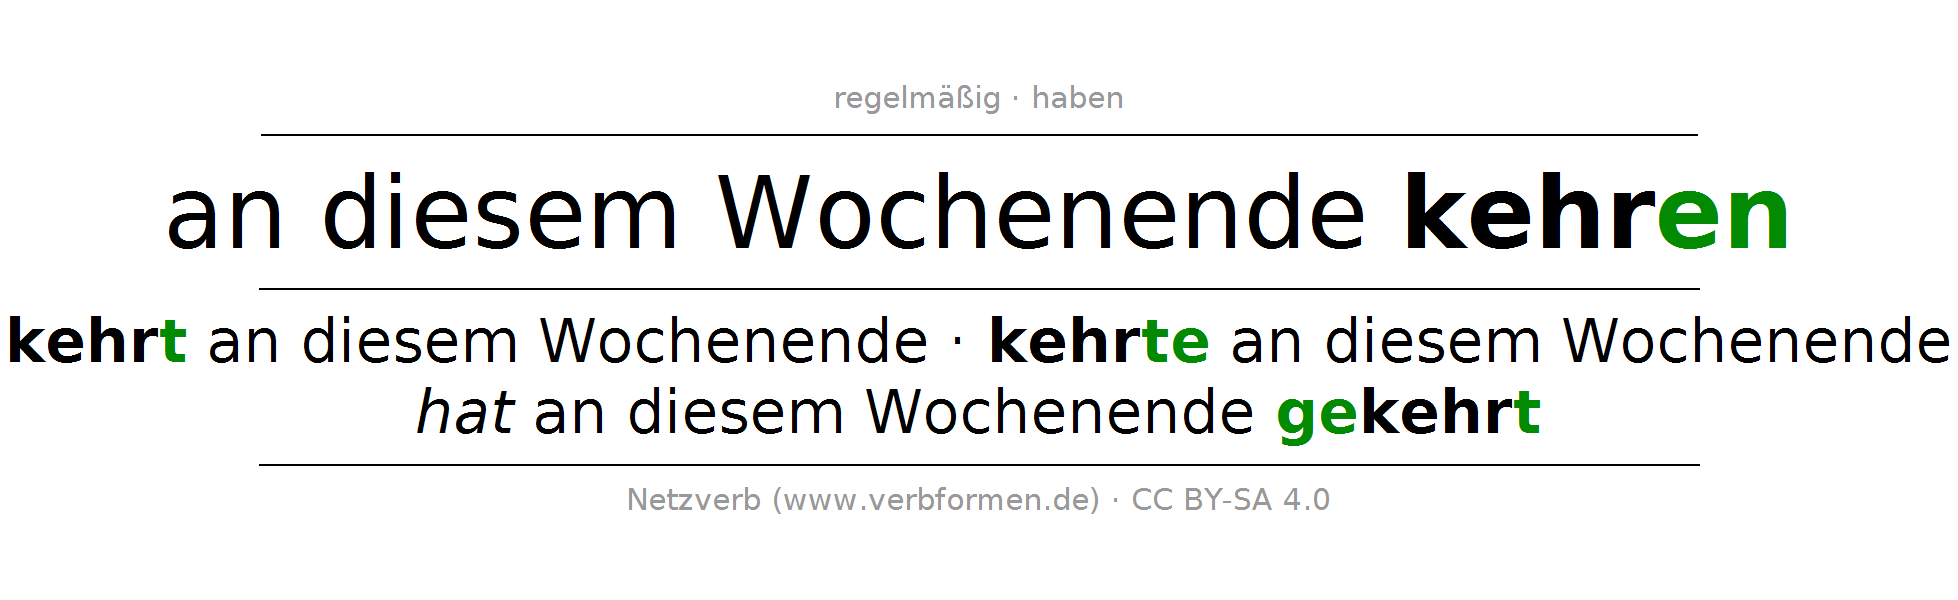 Konjugation Des Deutschen Verbs An Diesem Wochenende Kehren (Hat) - Kehren, Transparent background PNG HD thumbnail